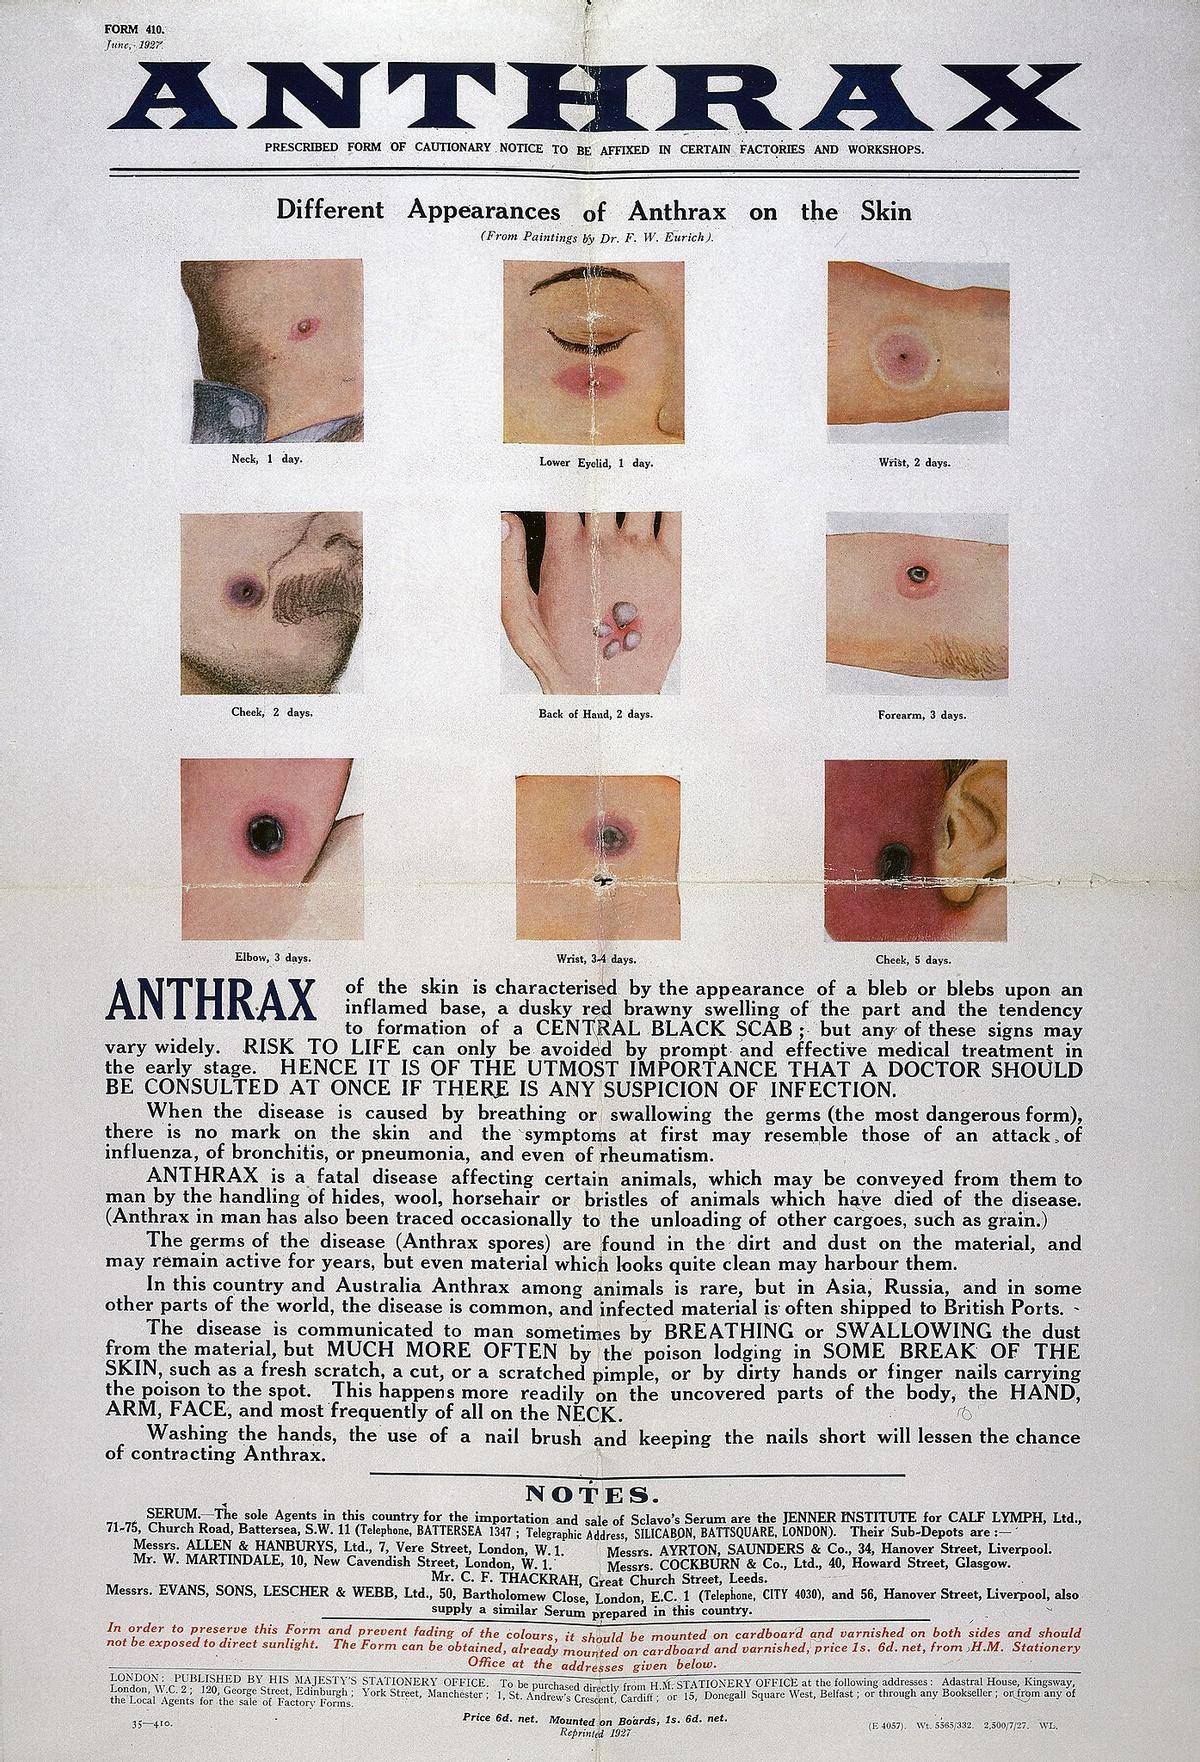 Poster presentando las diferentes apariencias de las heridas de ántrax